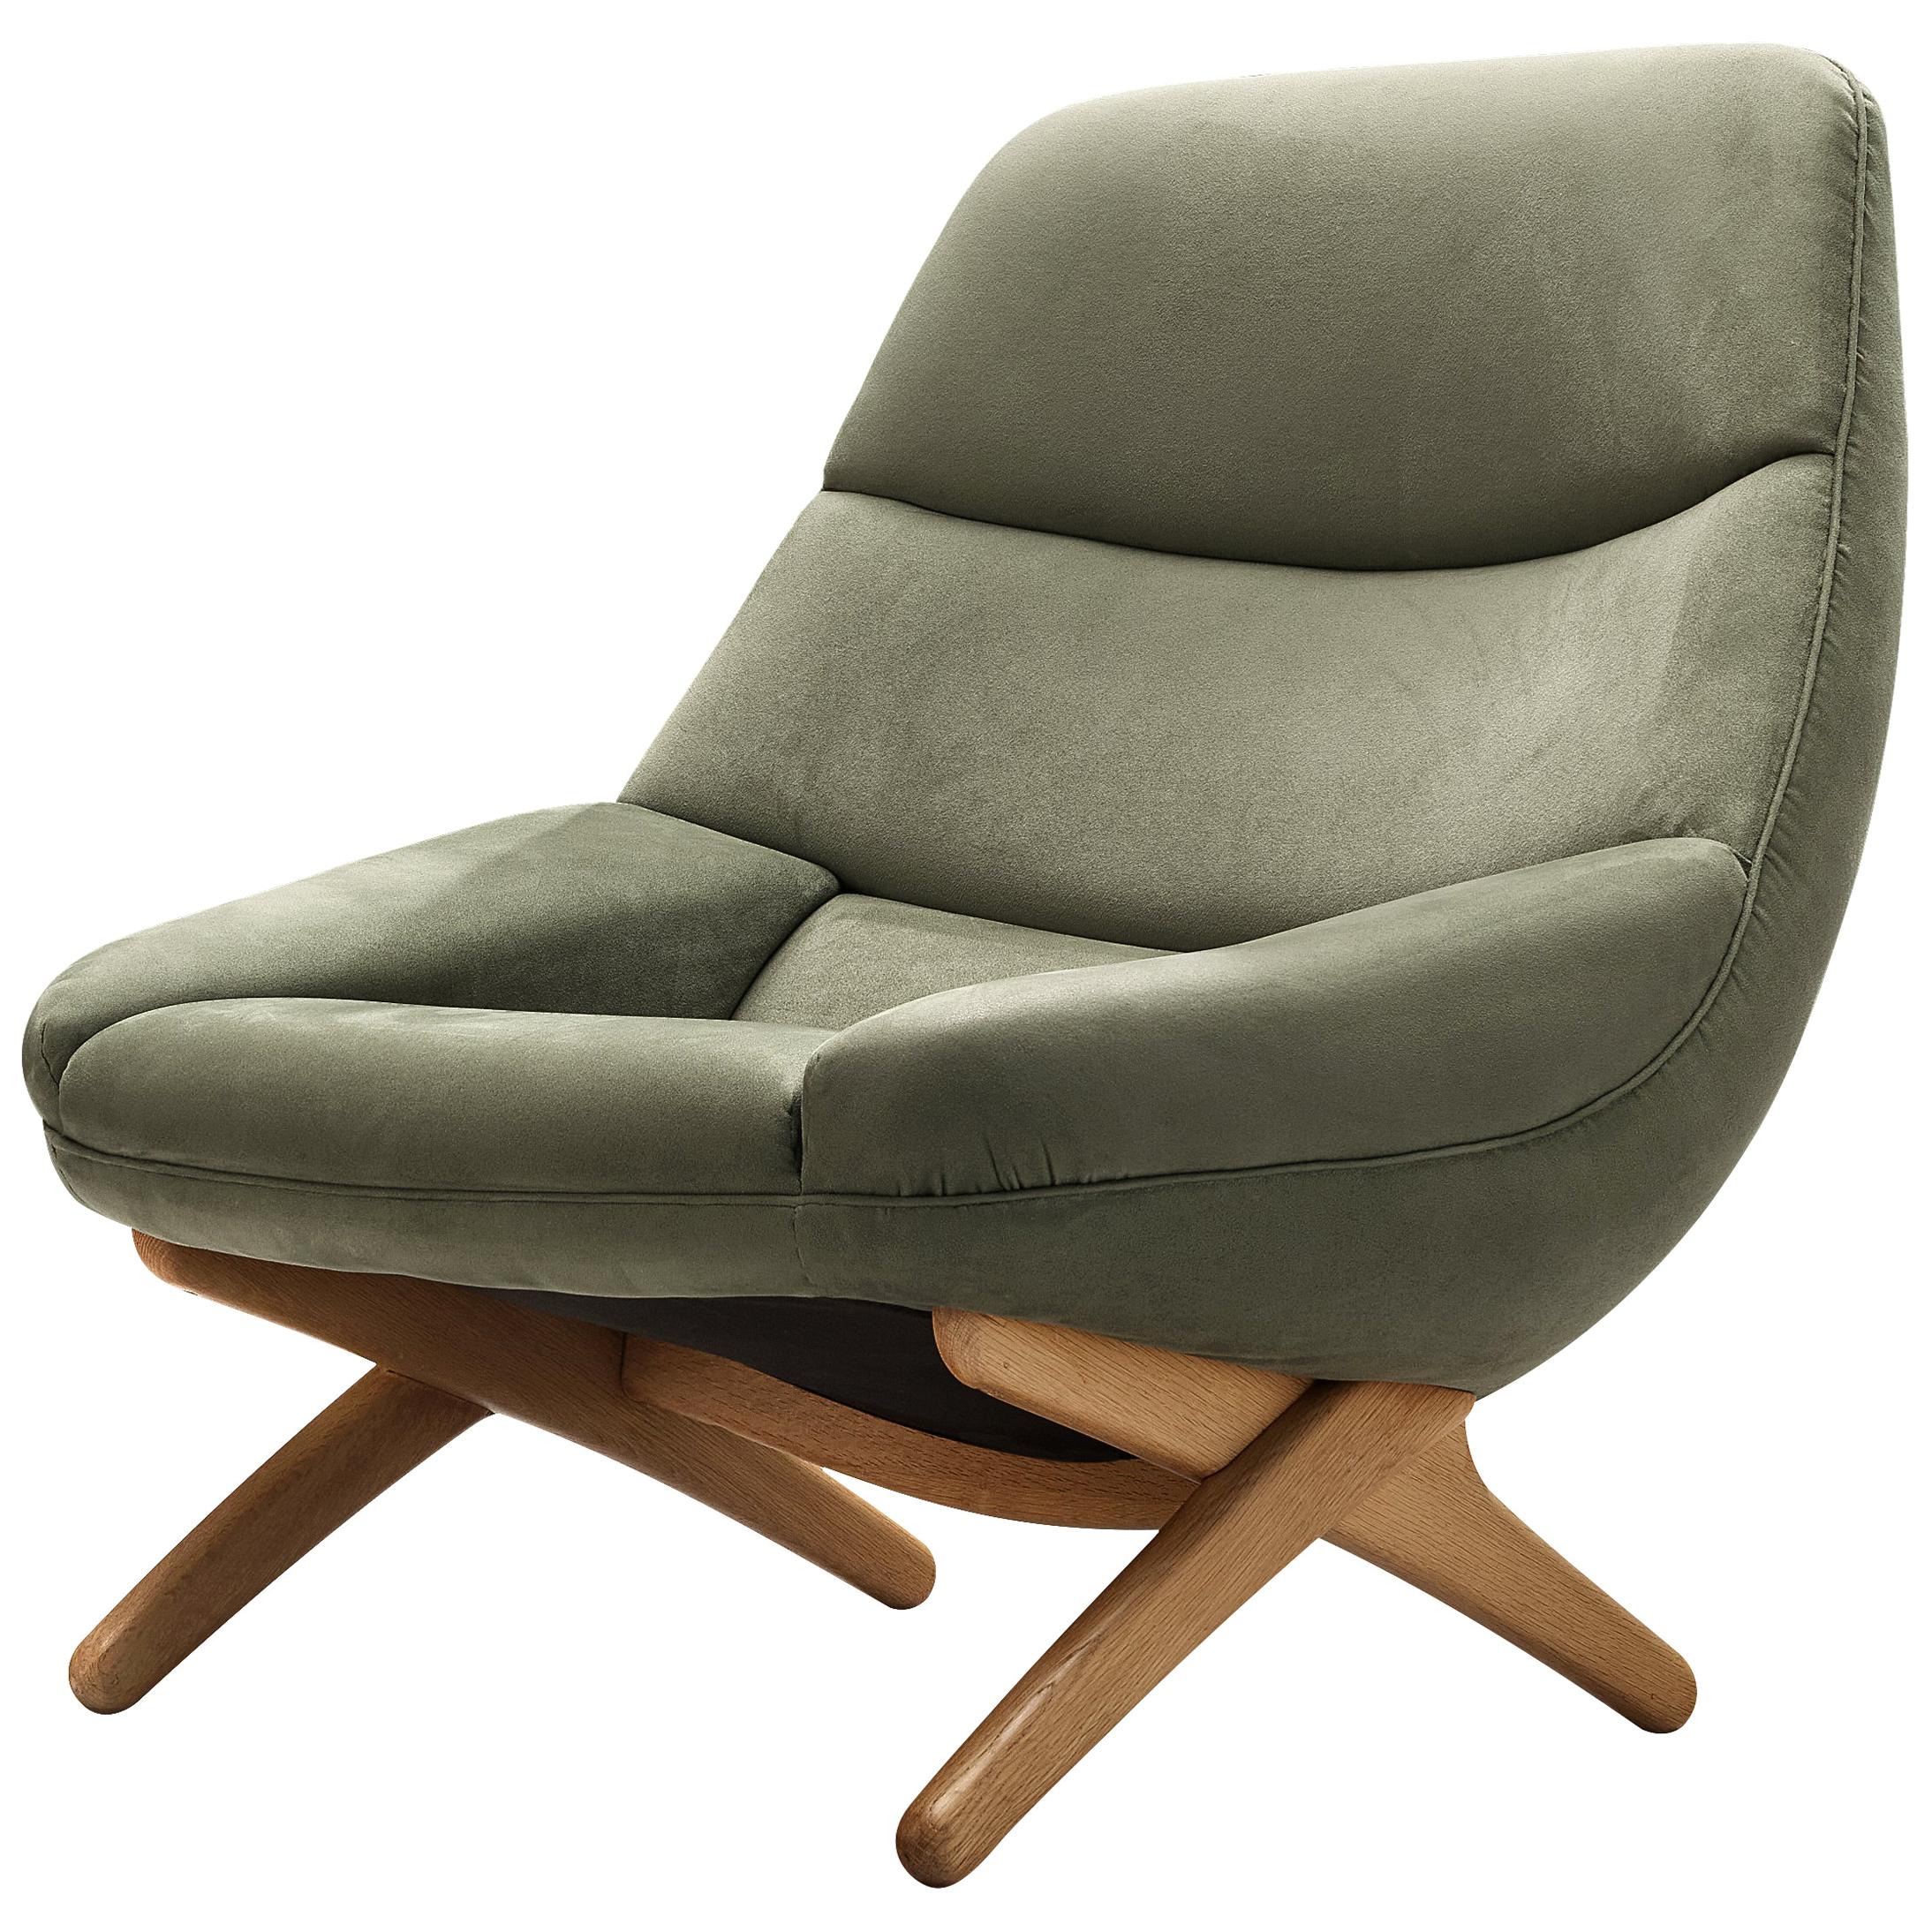 Illum Wikkelsø Lounge Chair ‘ML91’ in Soft Green Velour Upholstery